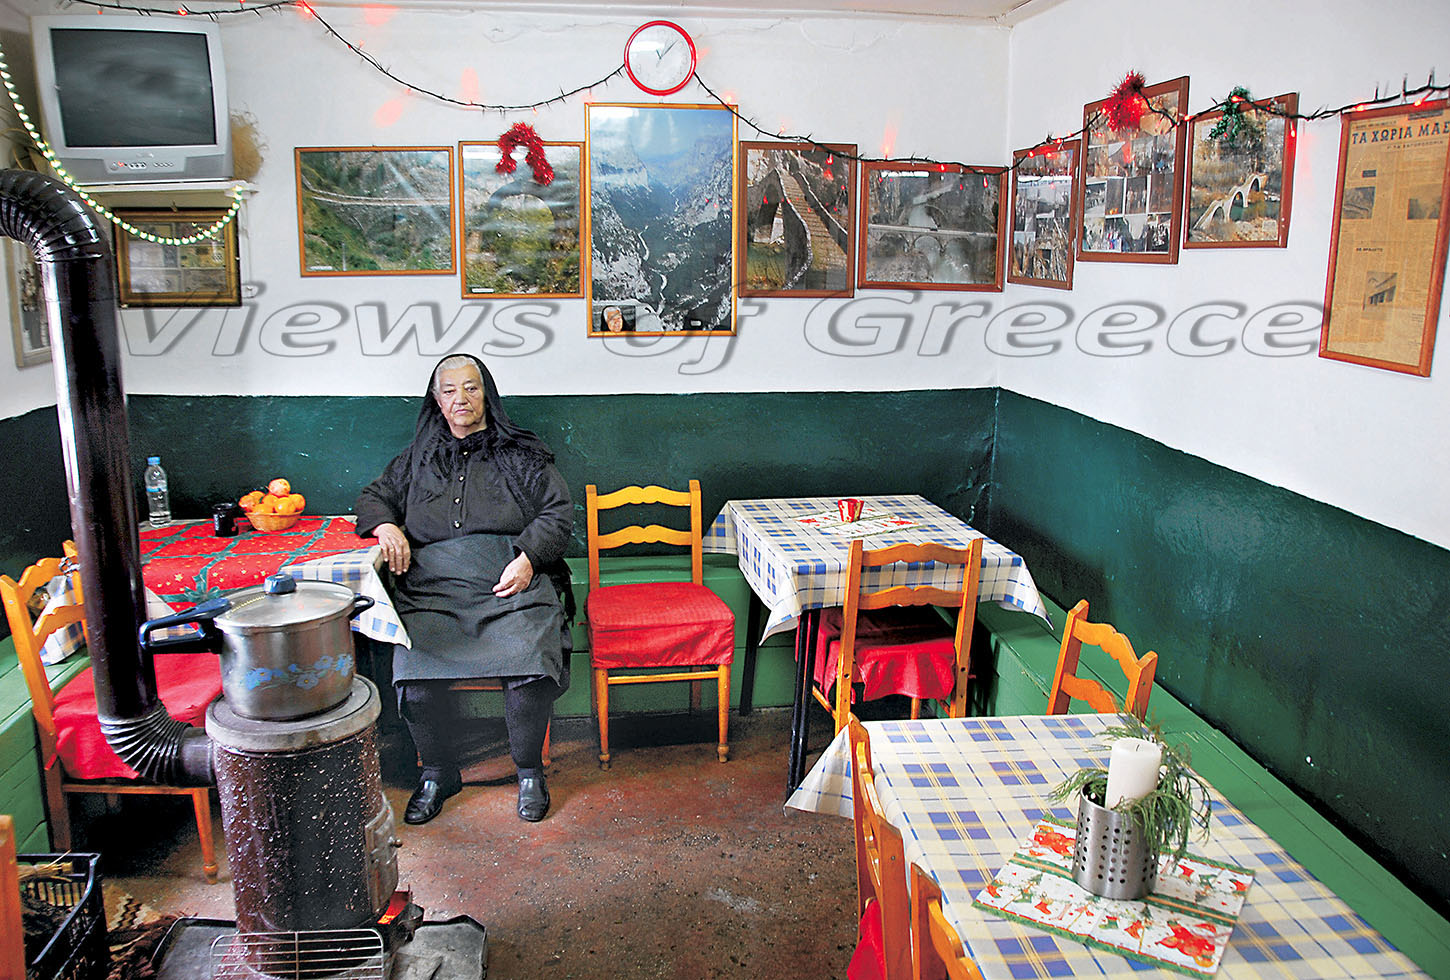 ΒΡΑΔΕΤΟ ΖΑΓΟΡΙ. Η γιαγιά Κωνσταντίνα στο καφενείο του Βραδέτου